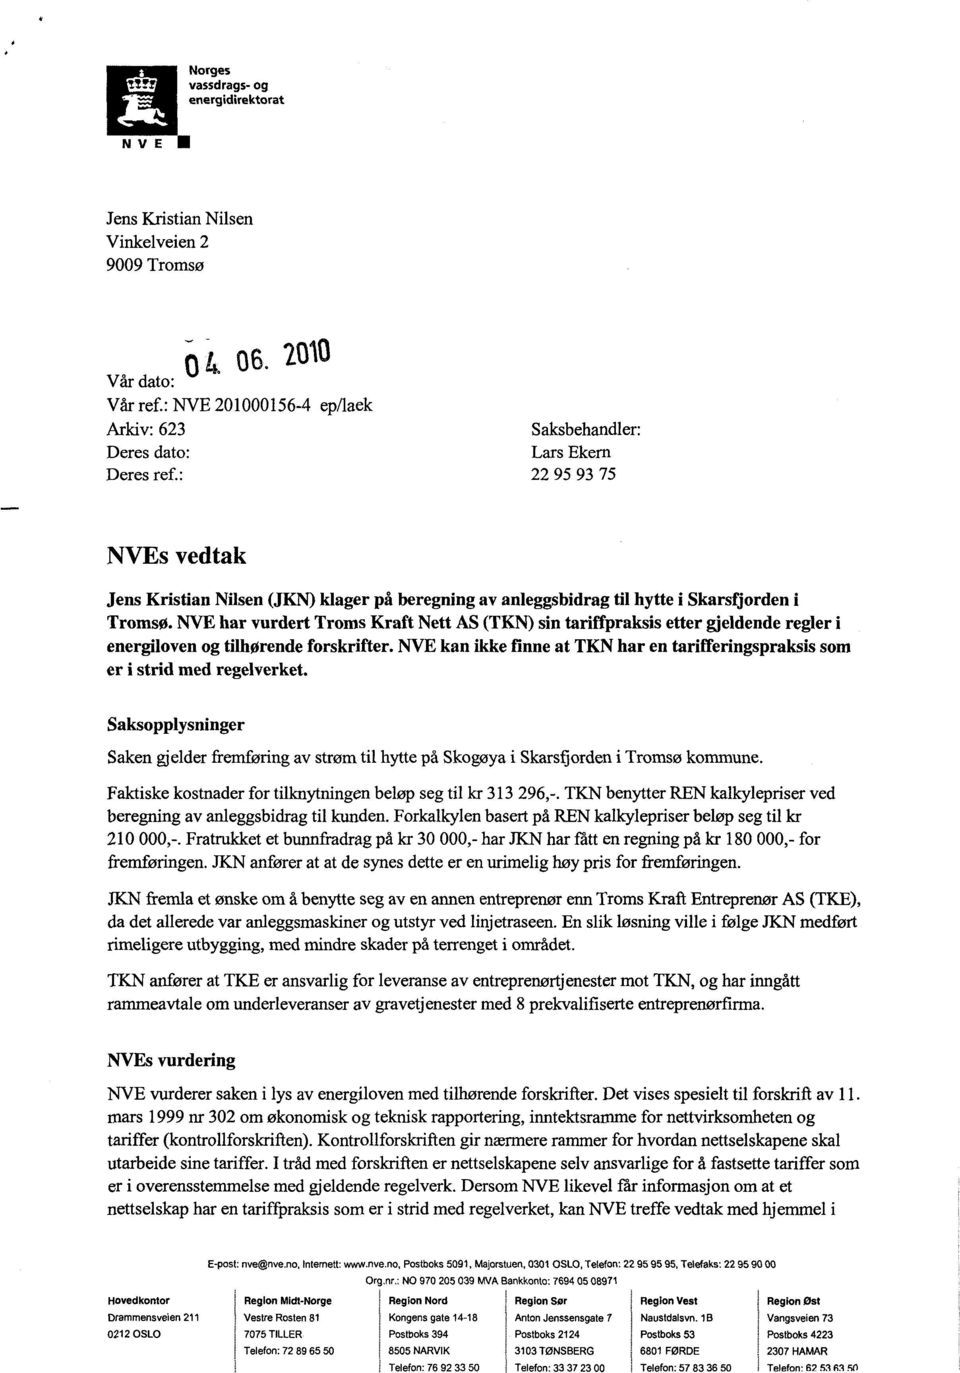 NVE har vurdert Troms Kraft Nett AS (TKN) sin tariffpraksis etter gjeldende regler energiloven og tilhørende forskrifter.